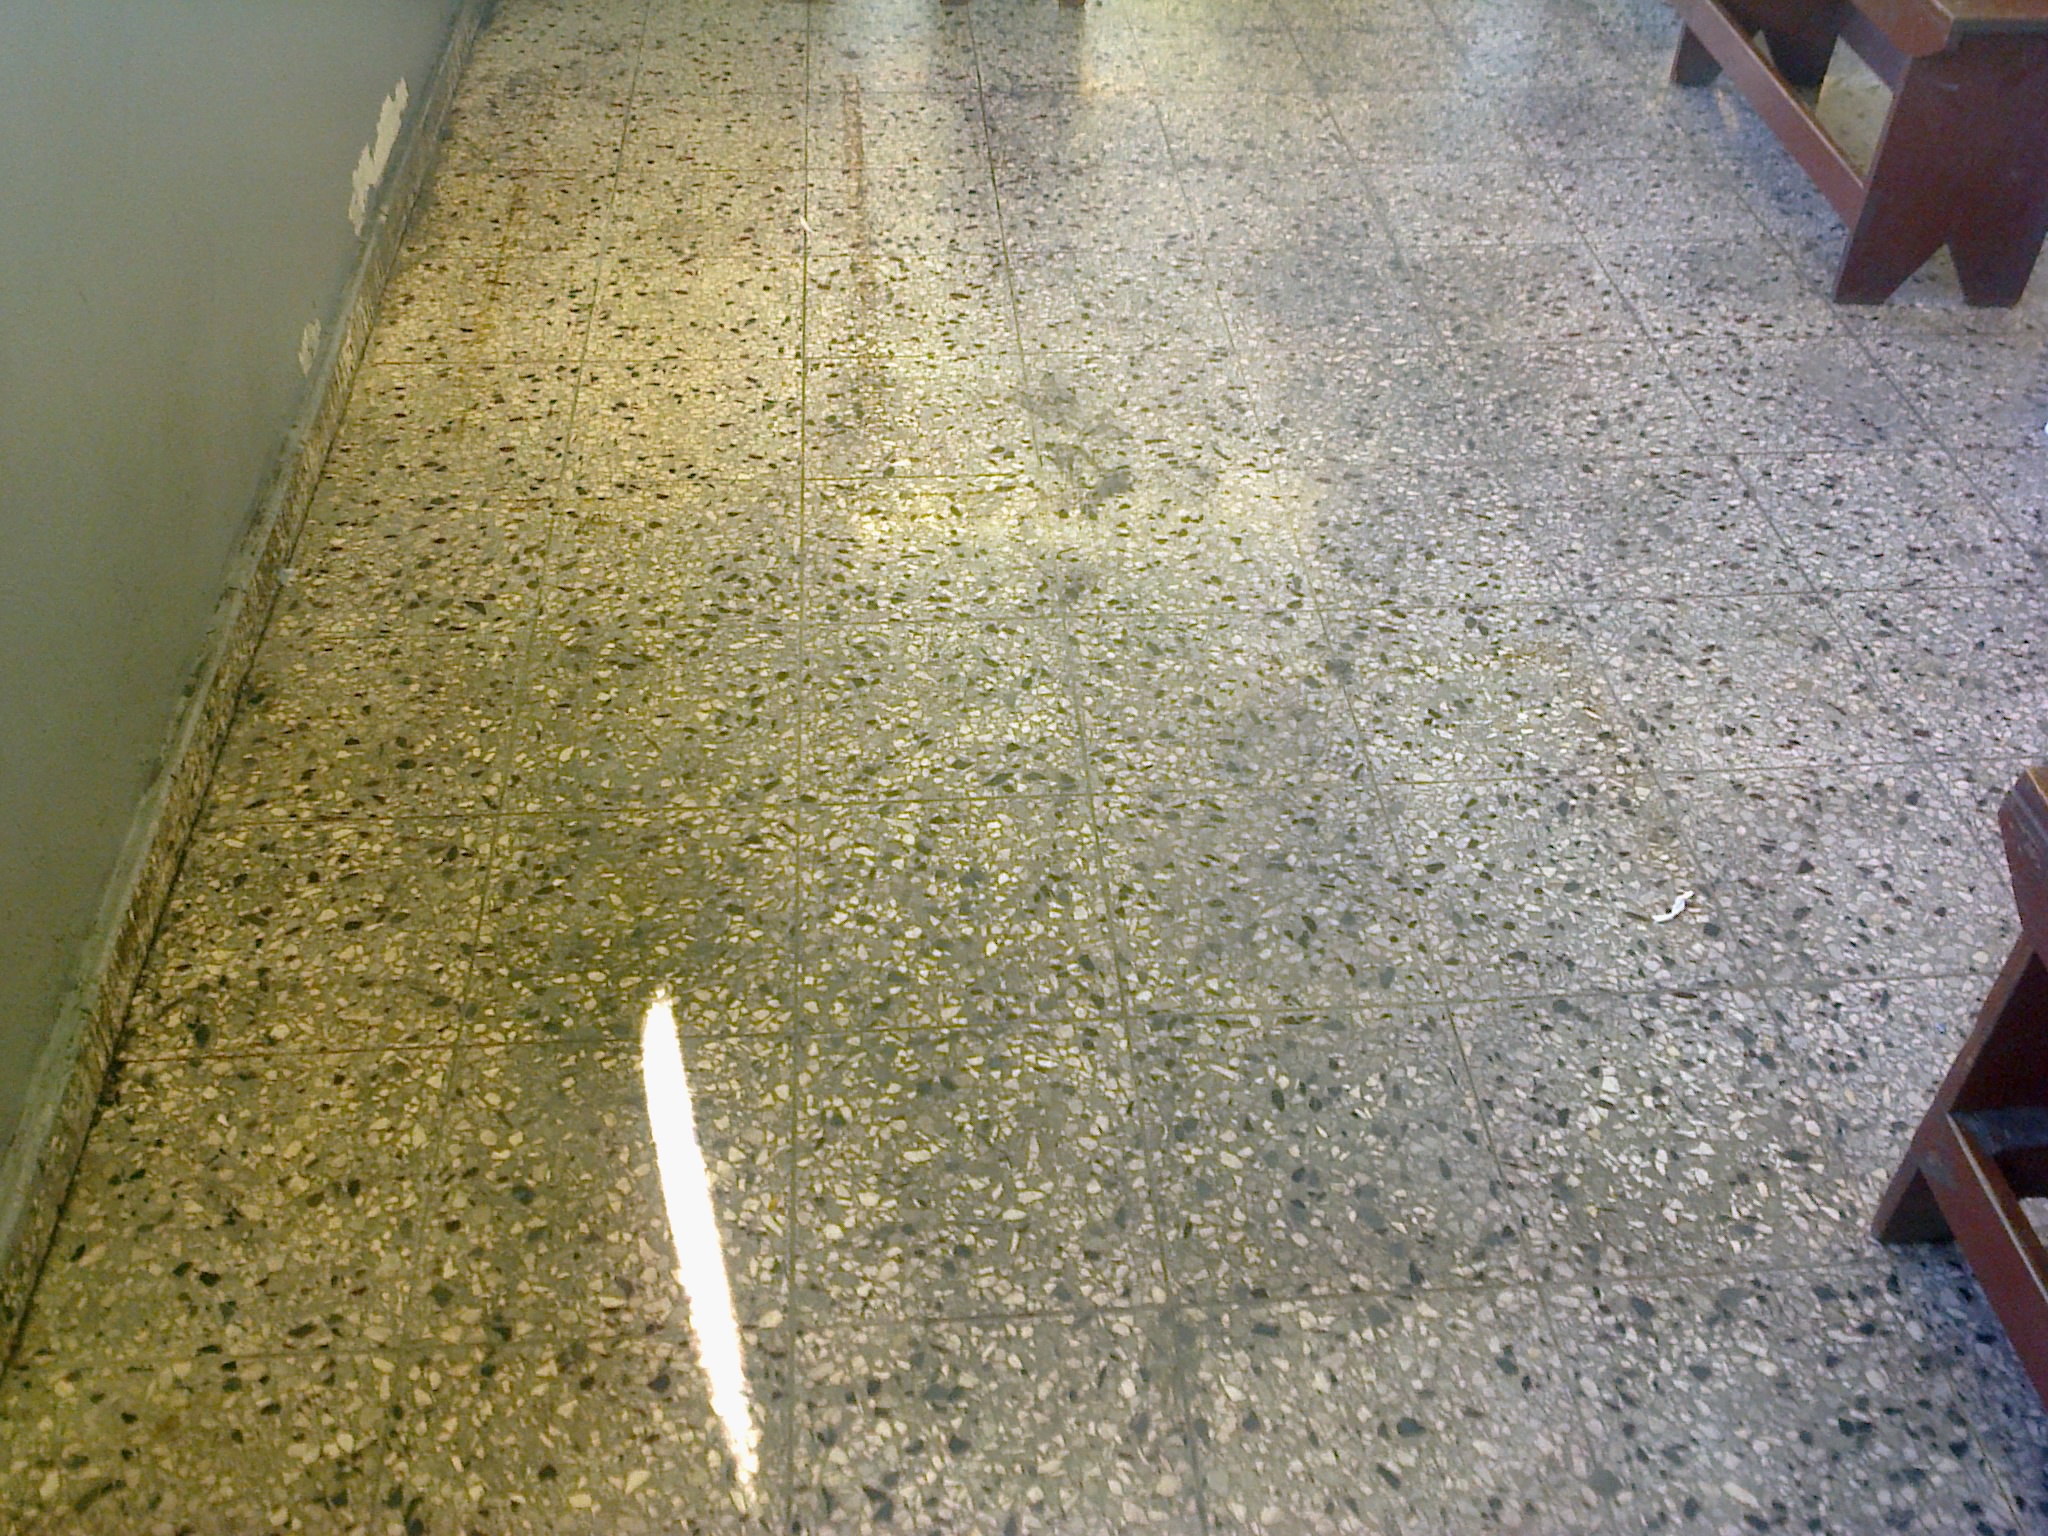 Limpieza empresa de servicios en republica dominicana mantenimiento de pisos en granito pulido en santo domingo brillado de marmol y cristalizado